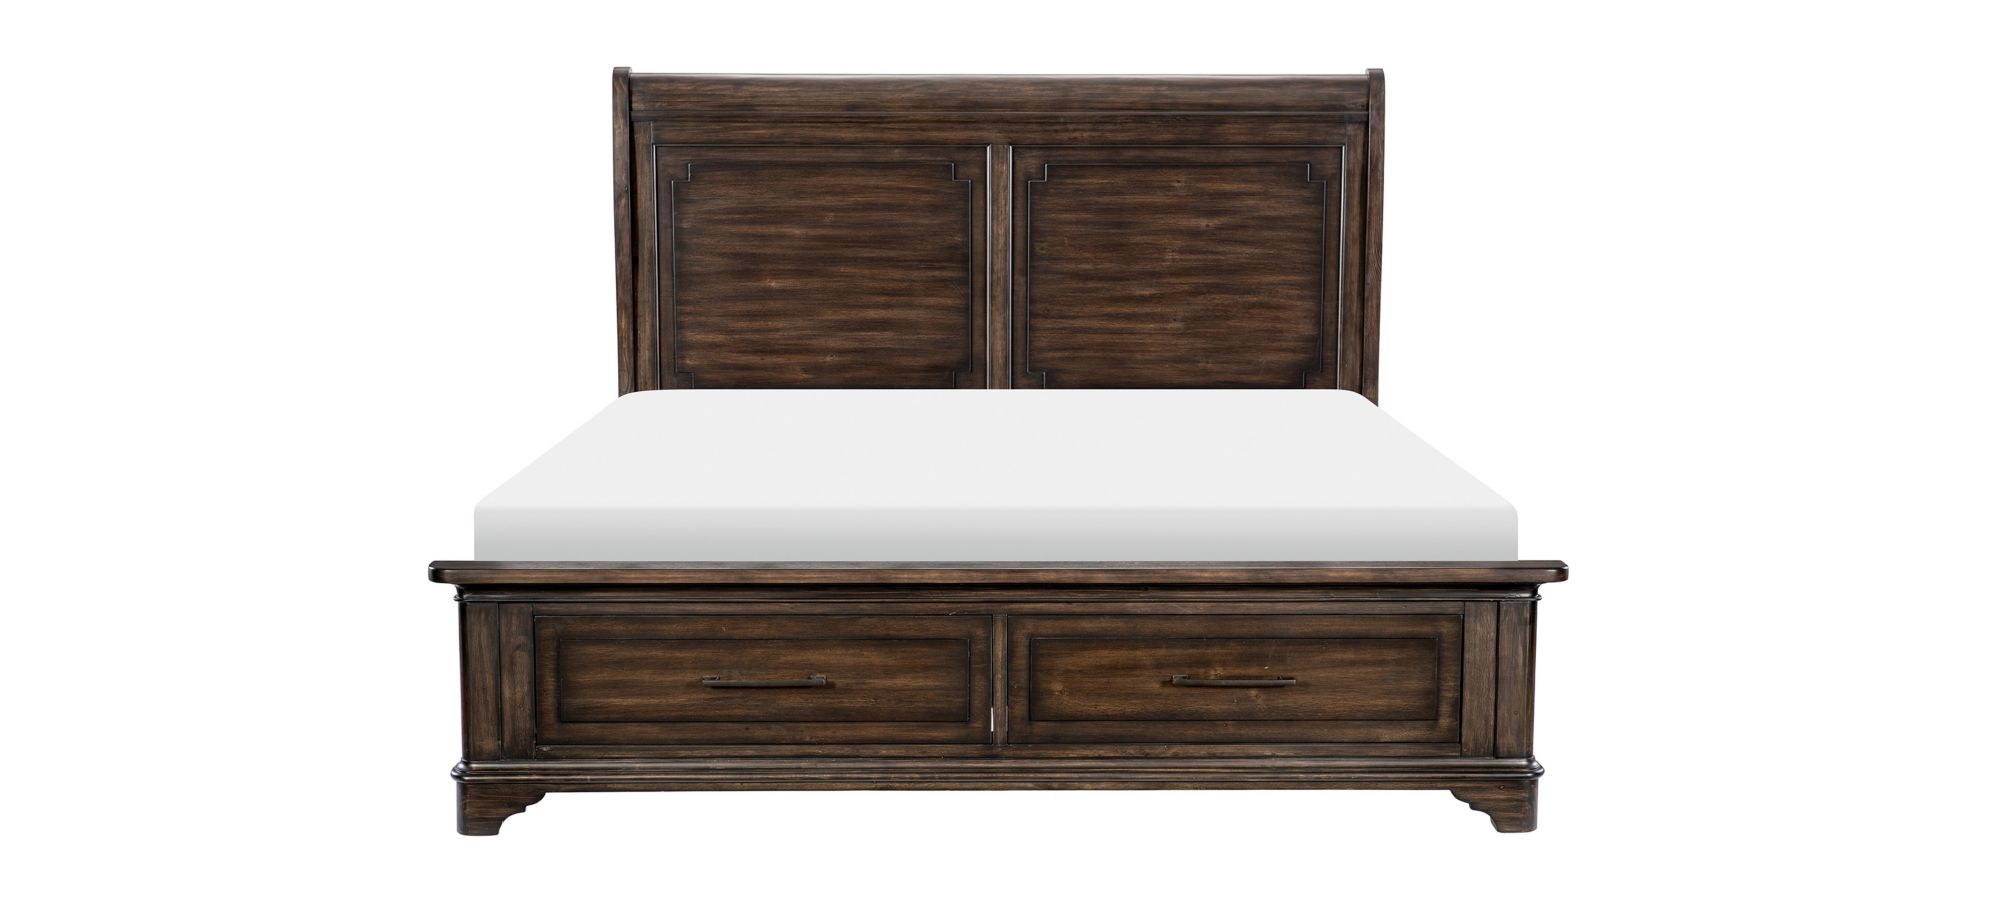 Leesa Cali King Bed in Rustic Brown by Homelegance